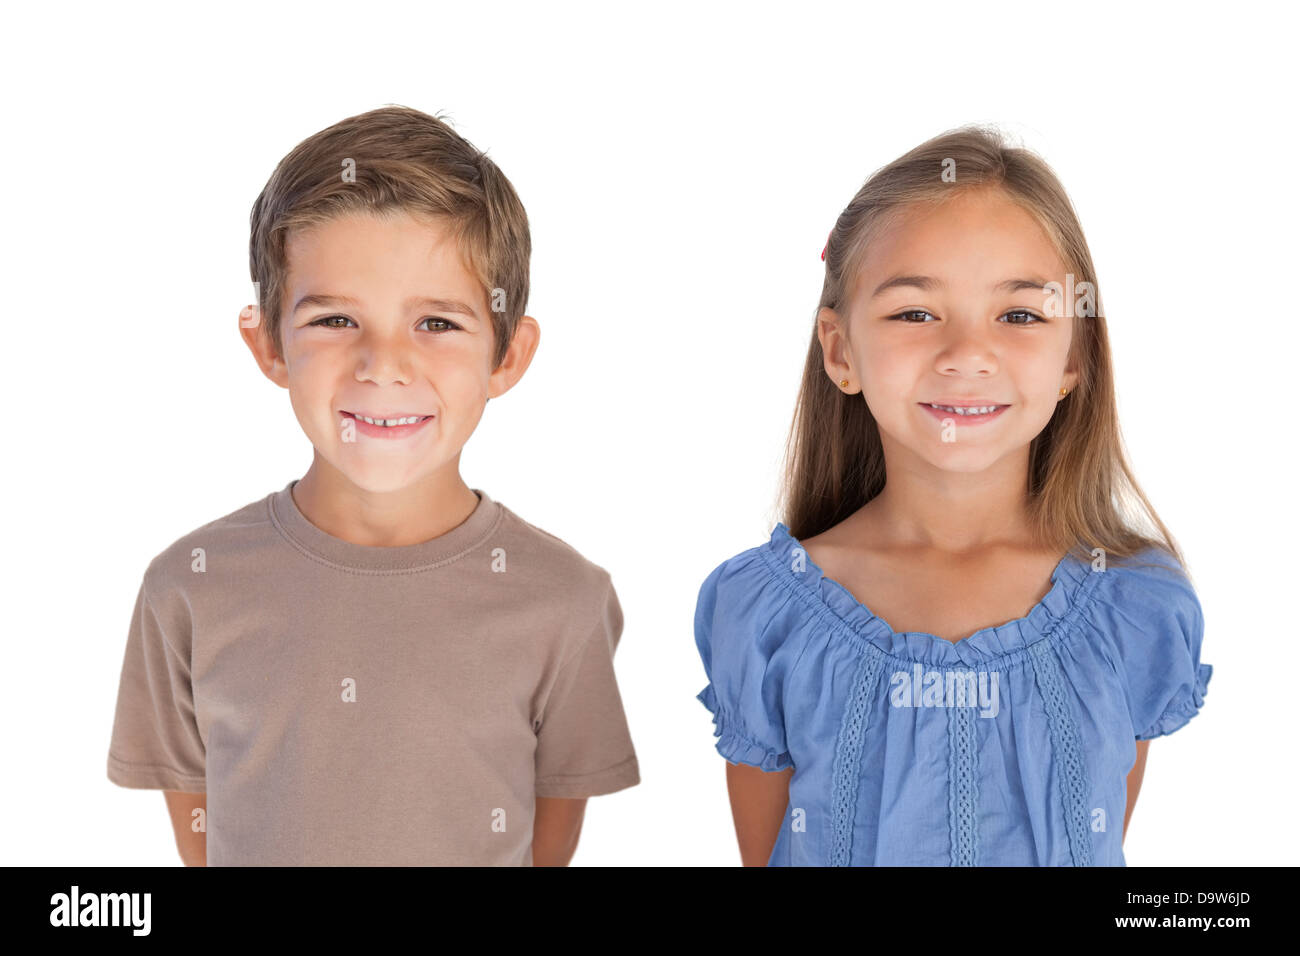 Deux enfants standing and smiling at camera Banque D'Images